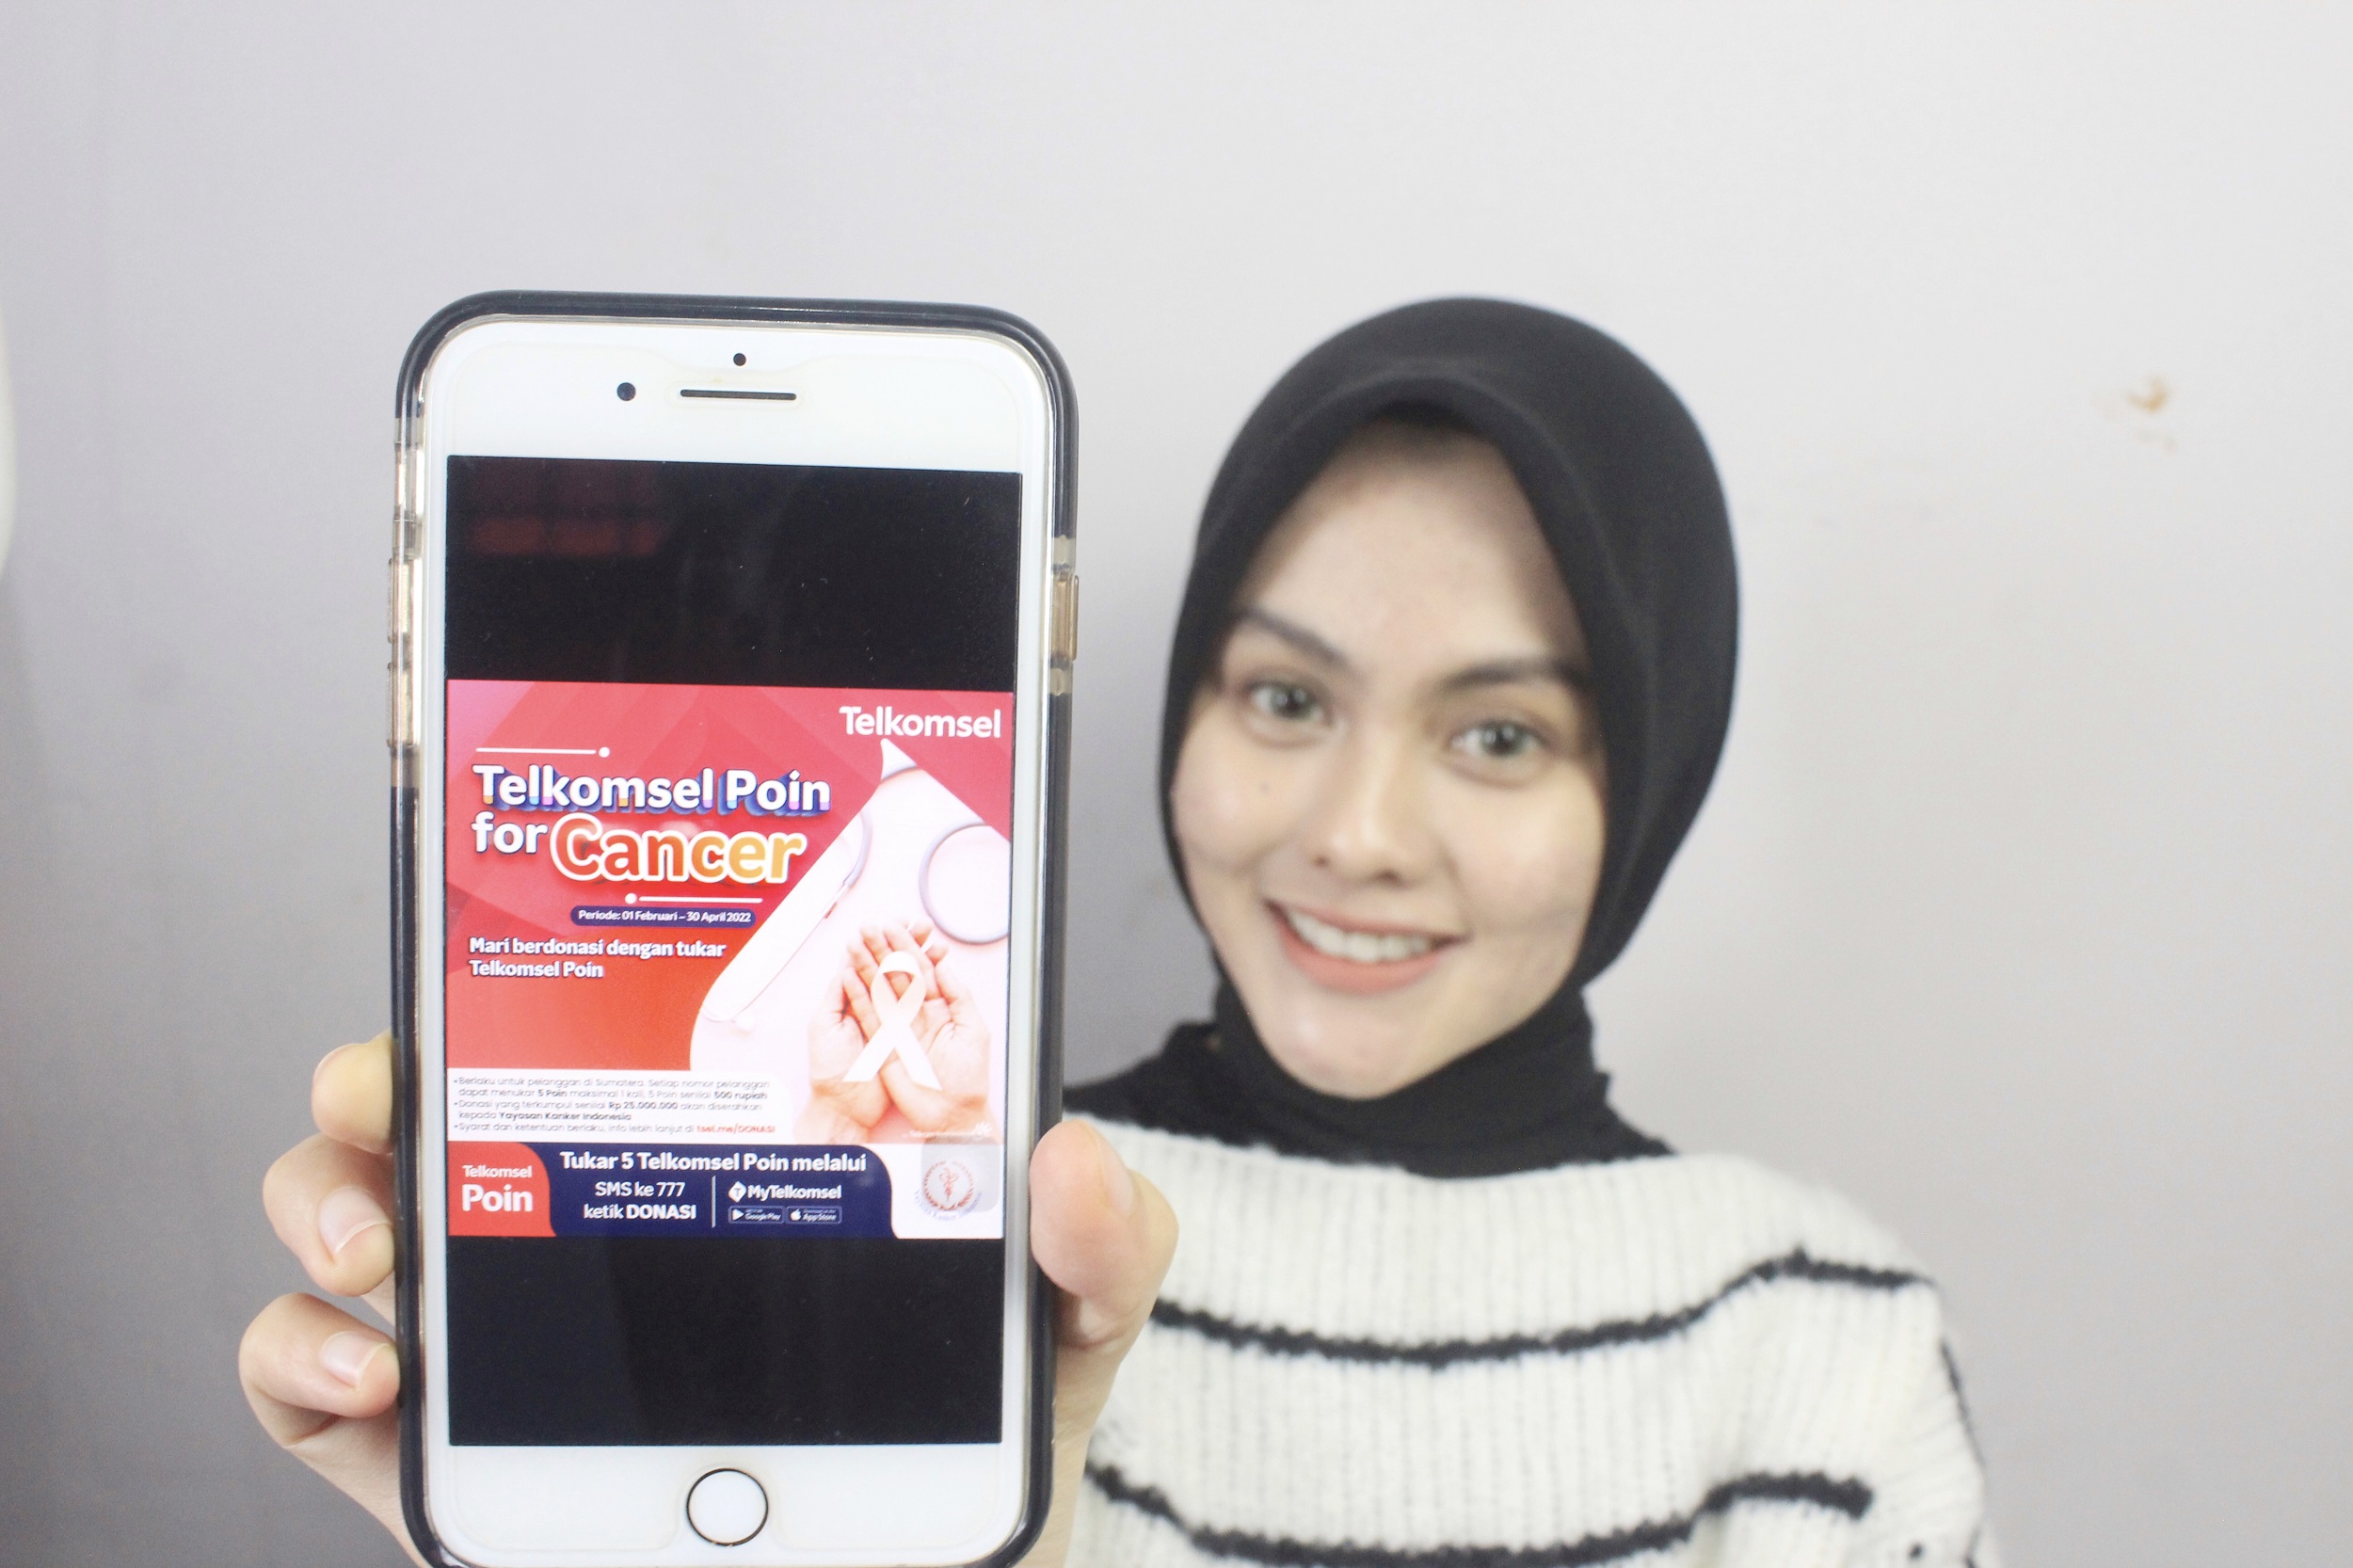  Telkomsel gelar program donasi POIN dalam membantu anak-anak penderita kanker di wilayah Sumatera Utara. Melalui program ini Telkomsel mengajak masyarkat untuk dapat melakukan donasi dengan cara menukarkan sejumlah POIN Telkomsel dengan uang yang nantiny